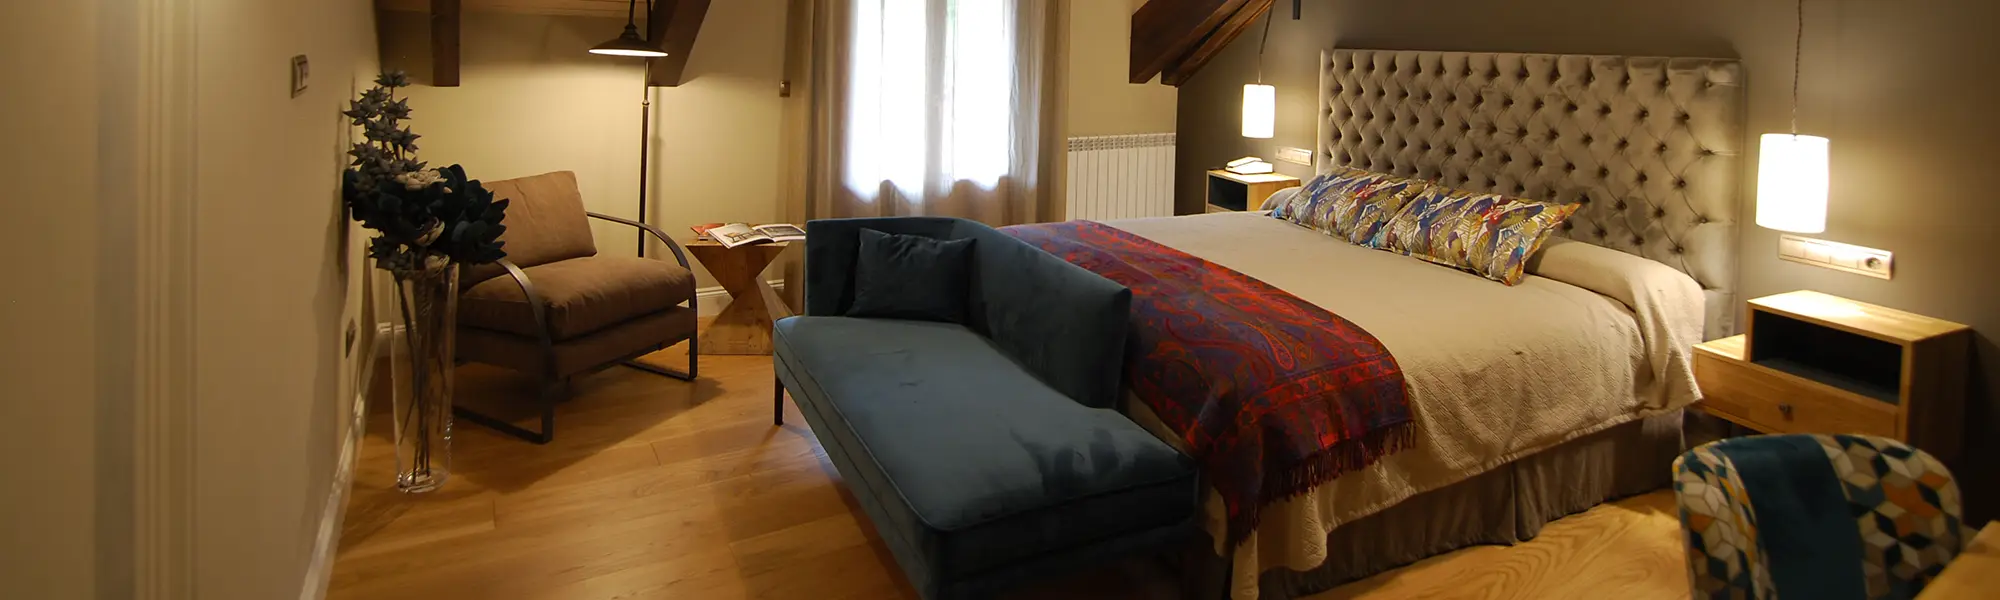 habitación de hotel con tono cálidos y vigas de madera